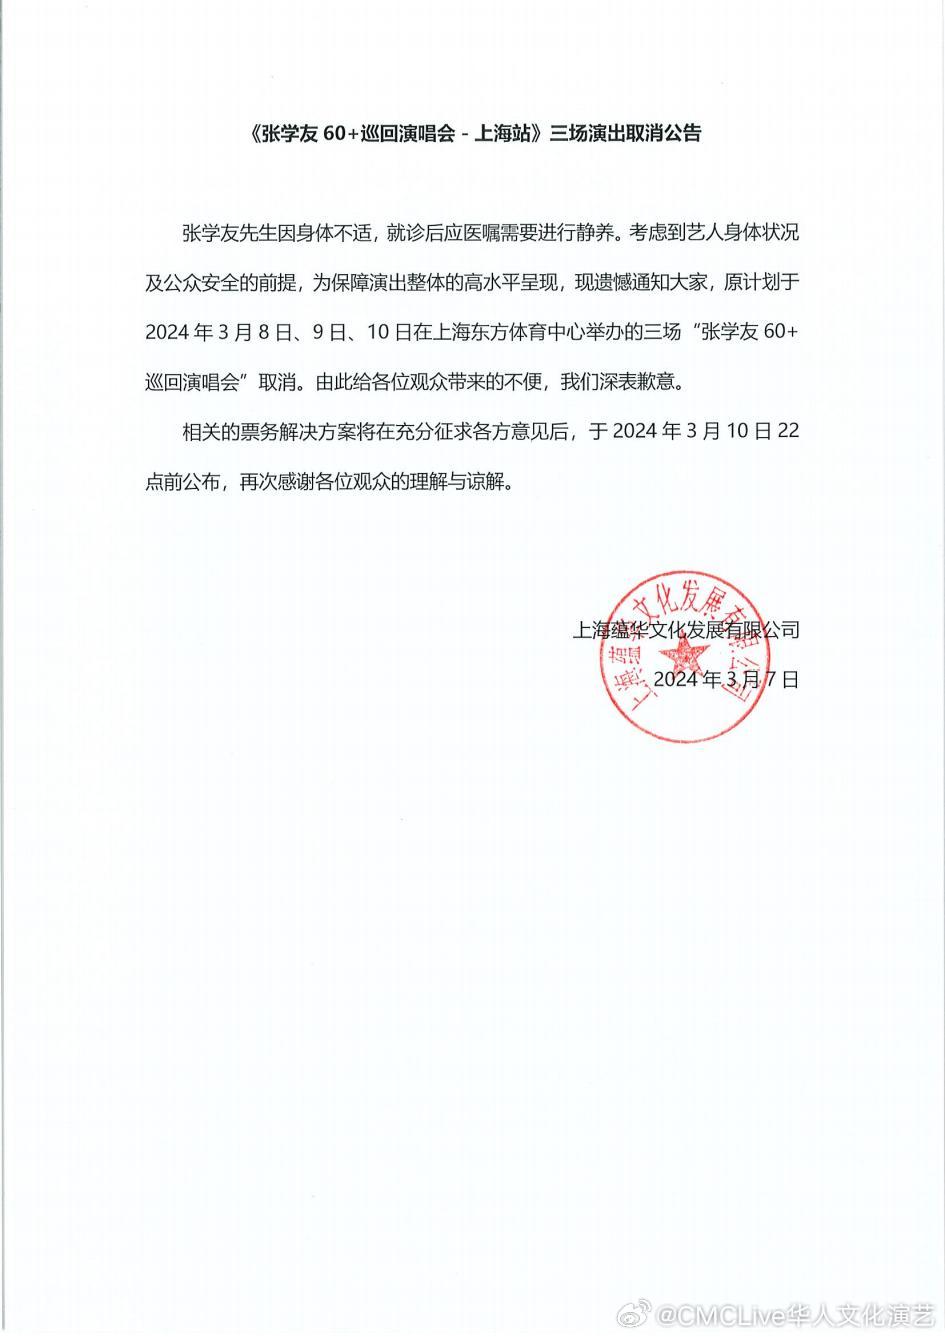 主辦單位3月7日突然宣布張學友因身體不適，取消三場上海演唱會。